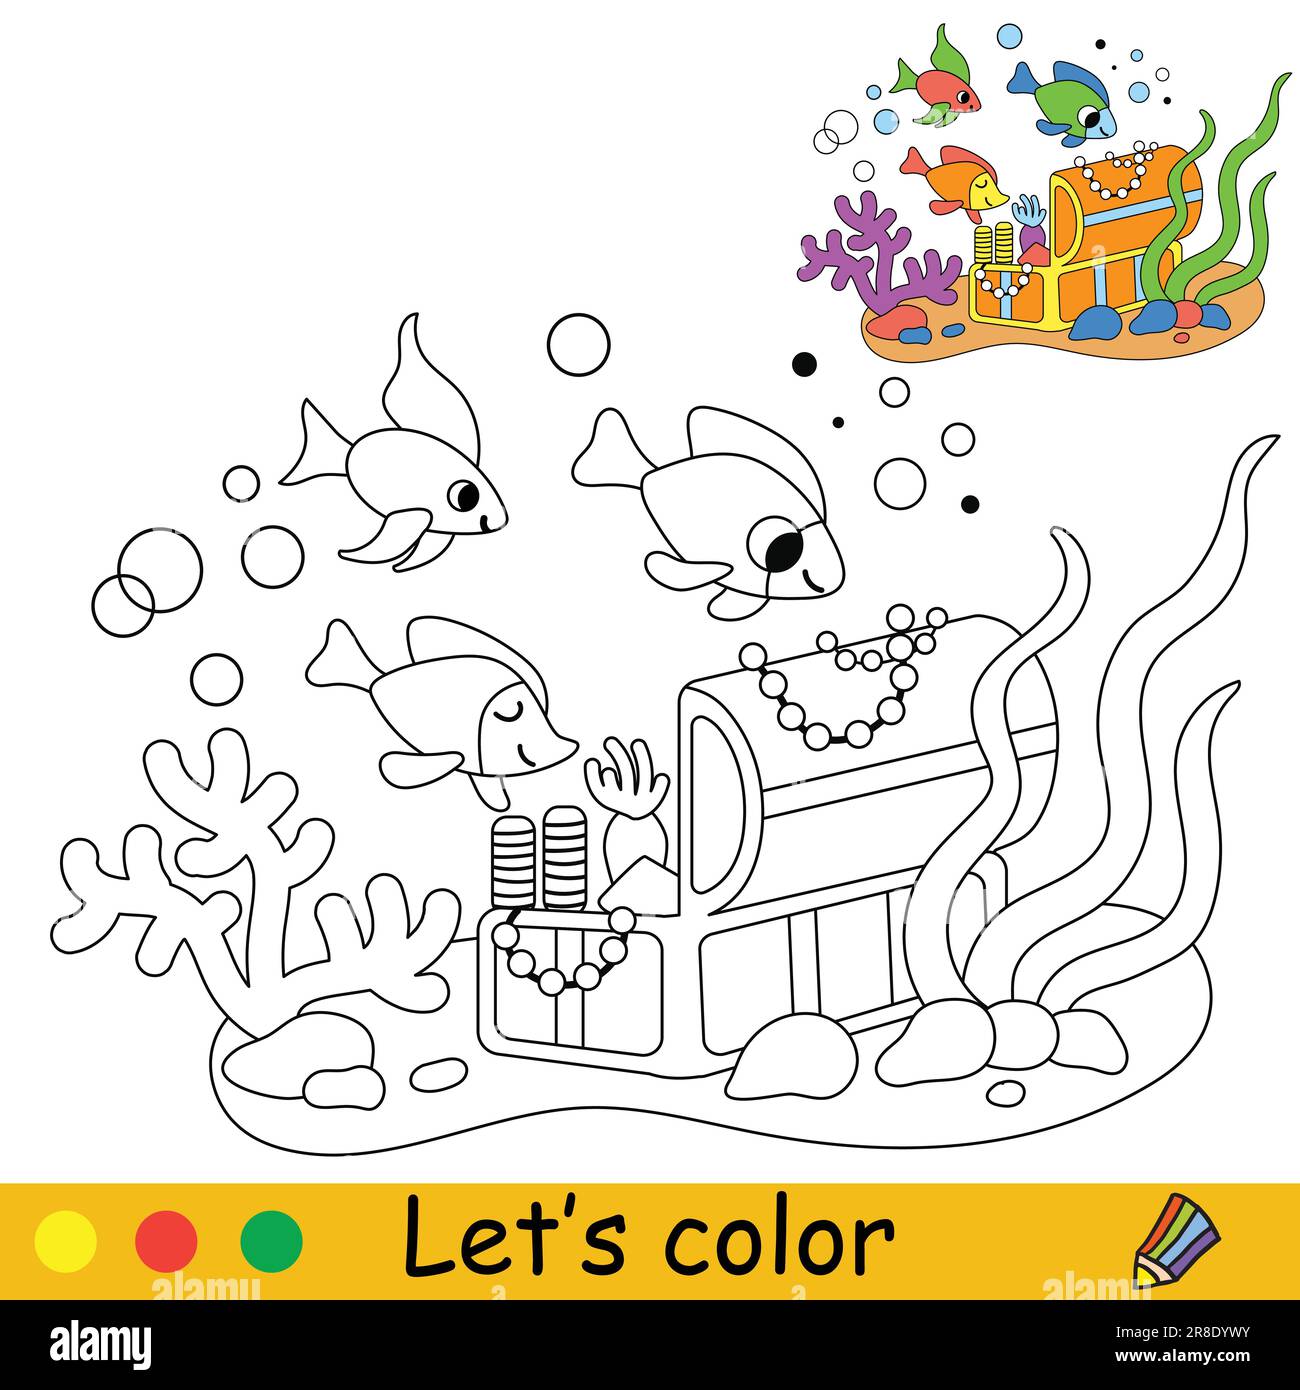 Schatztruhe und Fische unter Wasser. Vektor-Cartoon-Illustration. Malseite für Kinder mit einem Farbmuster. Für Druck, Design, Poster, Aufkleber, Karten, Stock Vektor